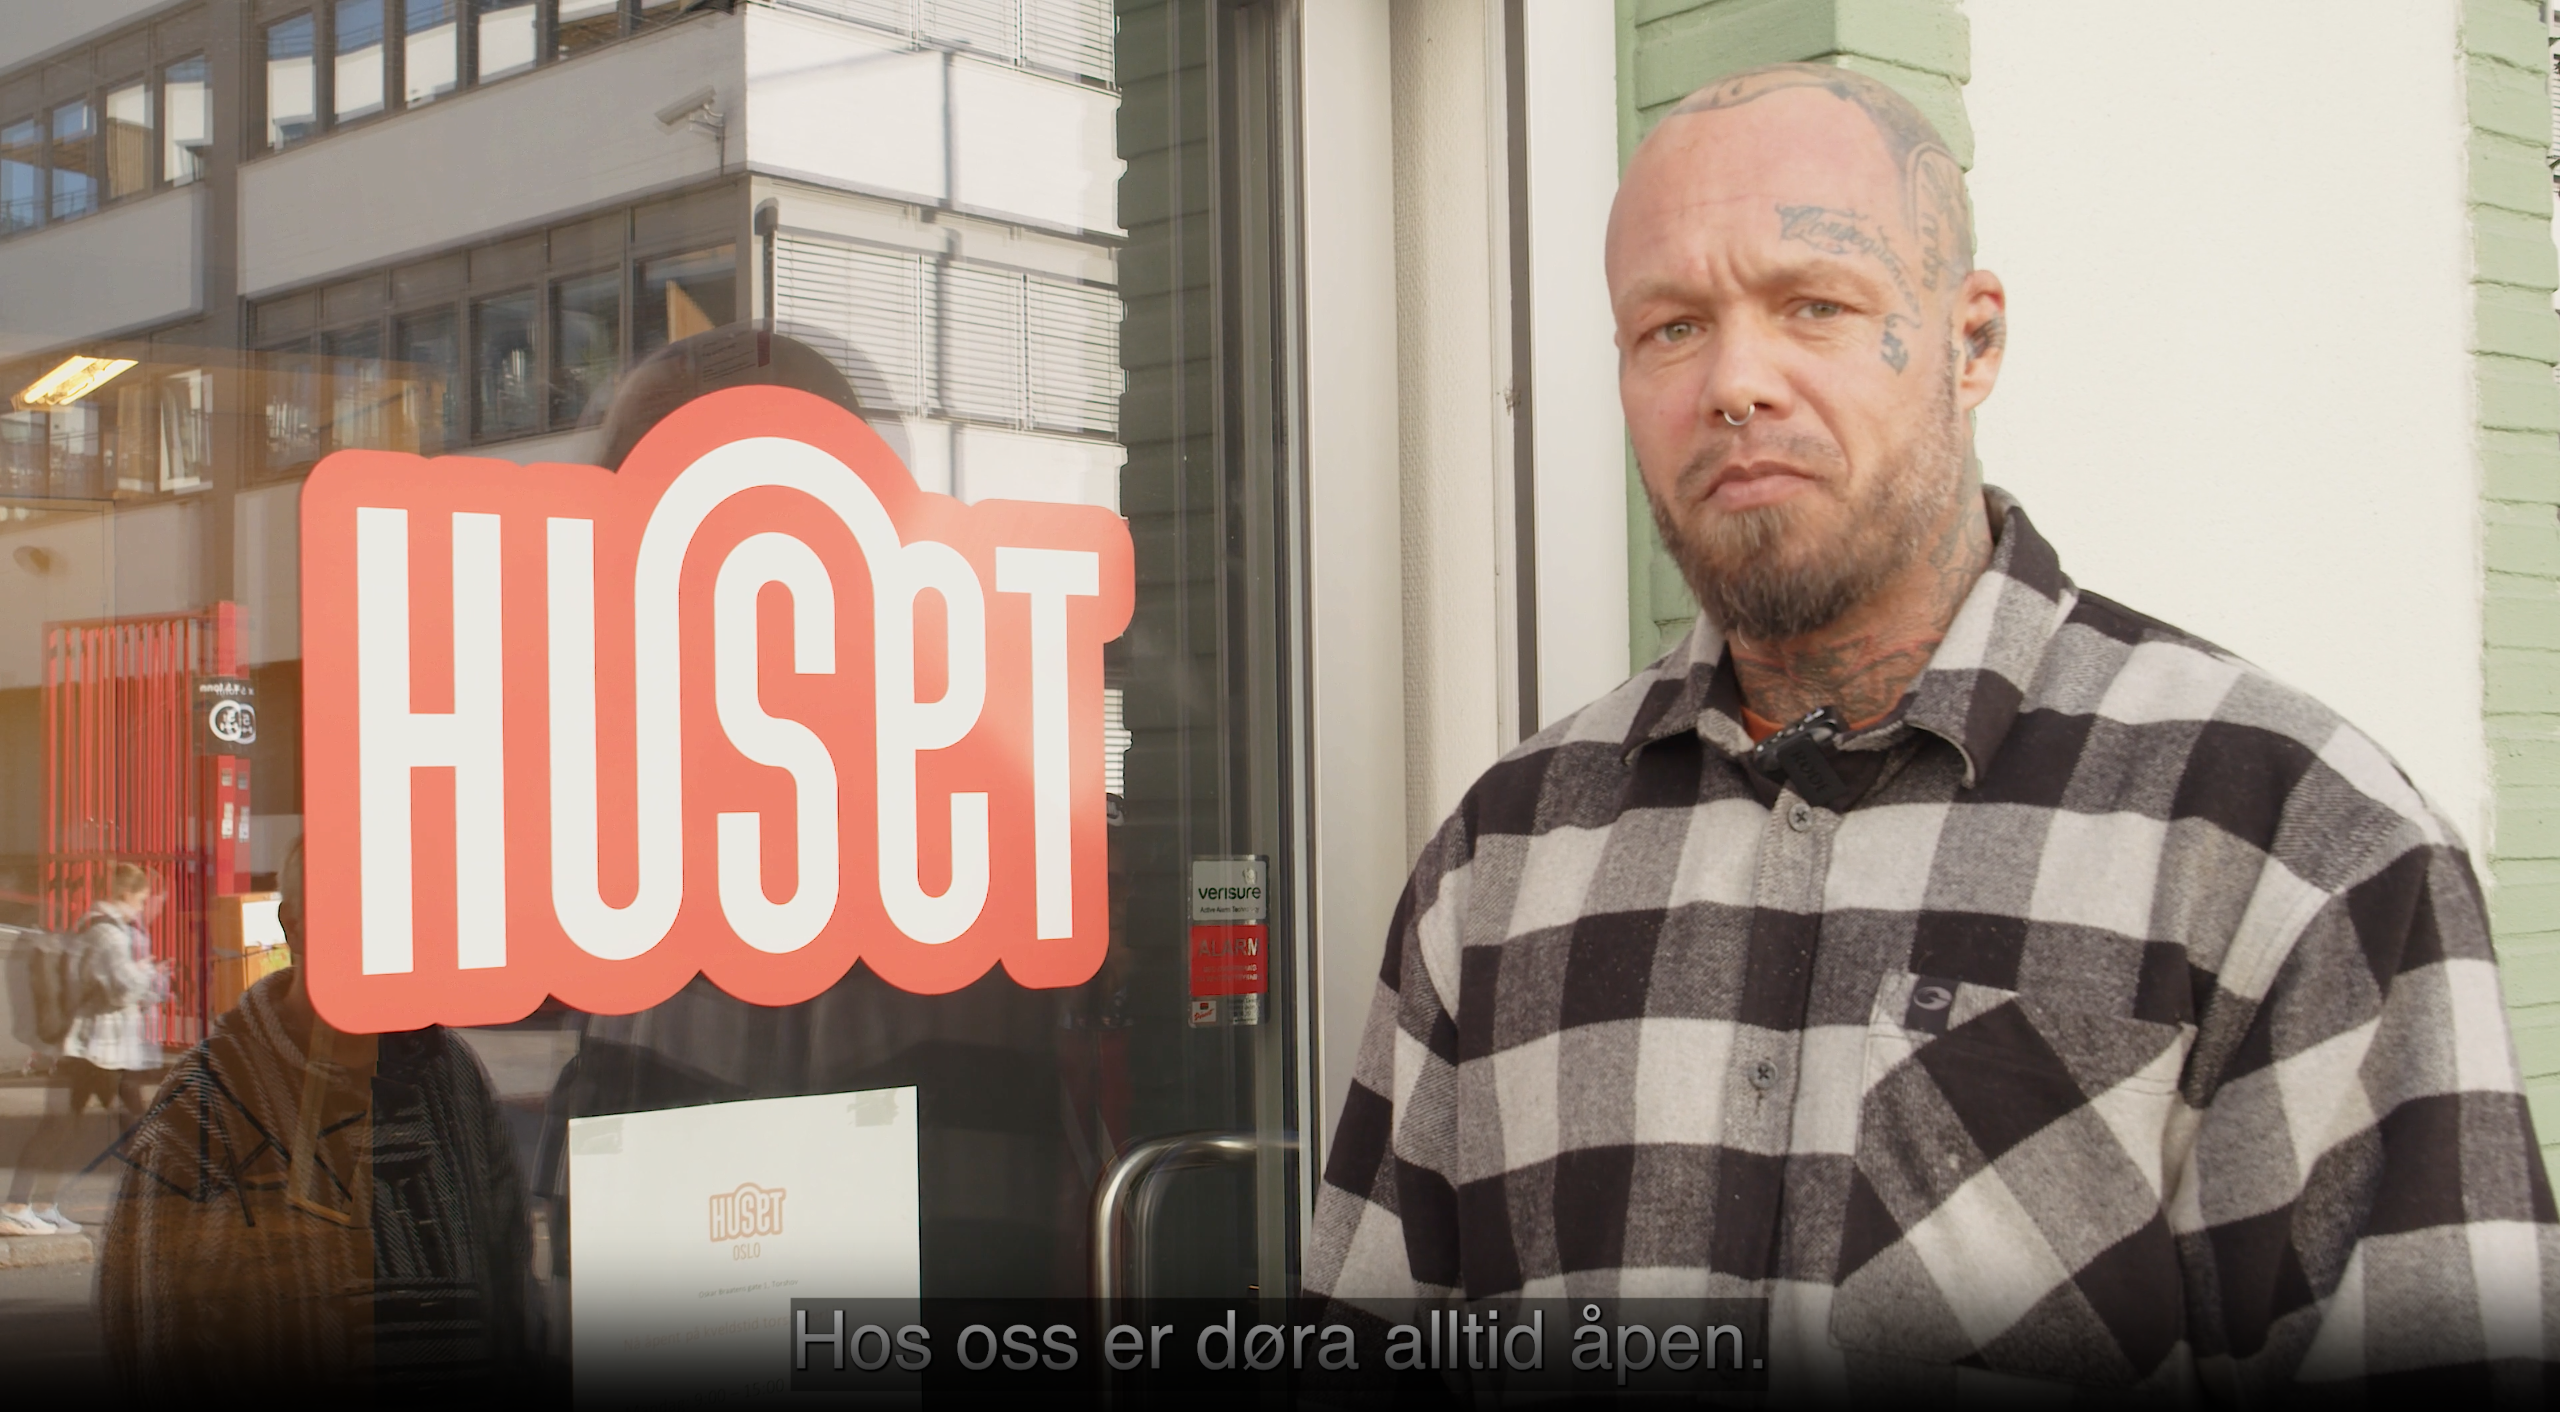 HUSET Oslo skjermdump fra video